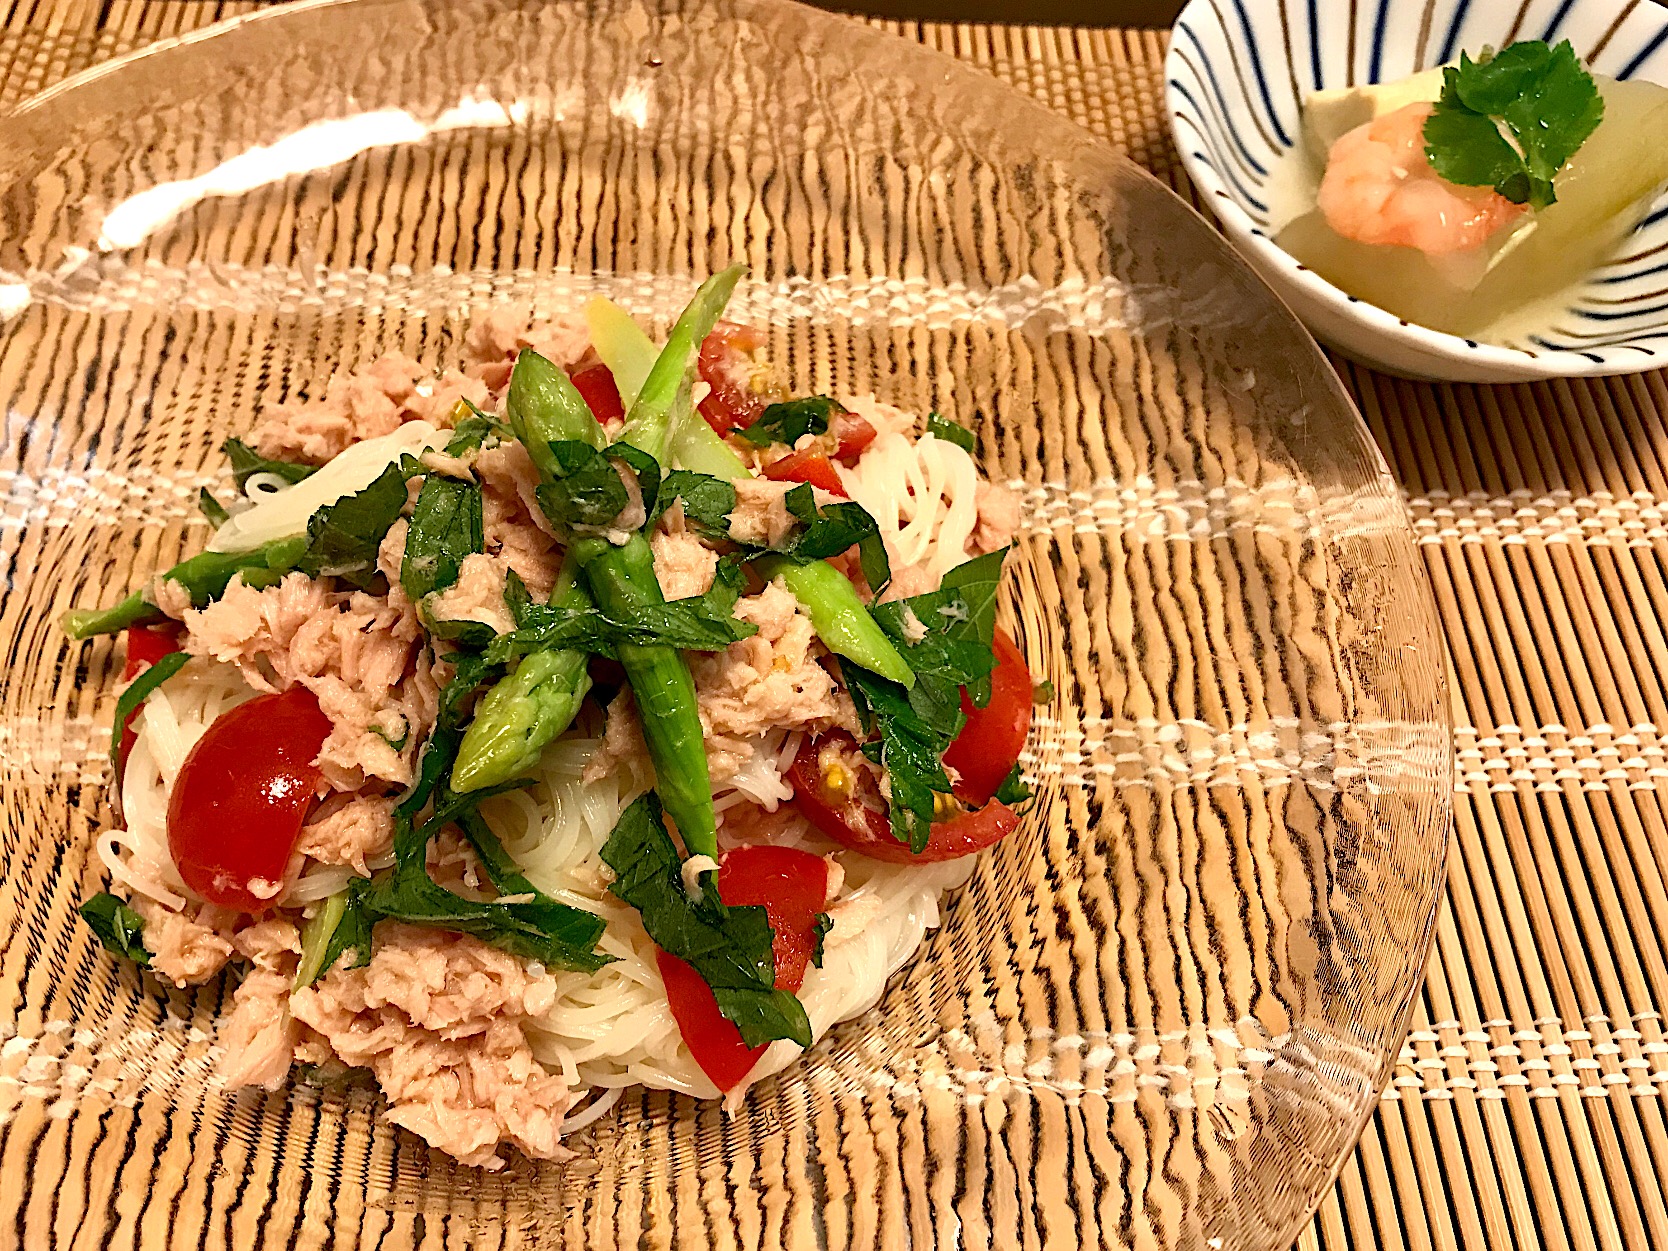 今日の夕飯 夏麺グランプリ18 ヤマサ醤油株式会社